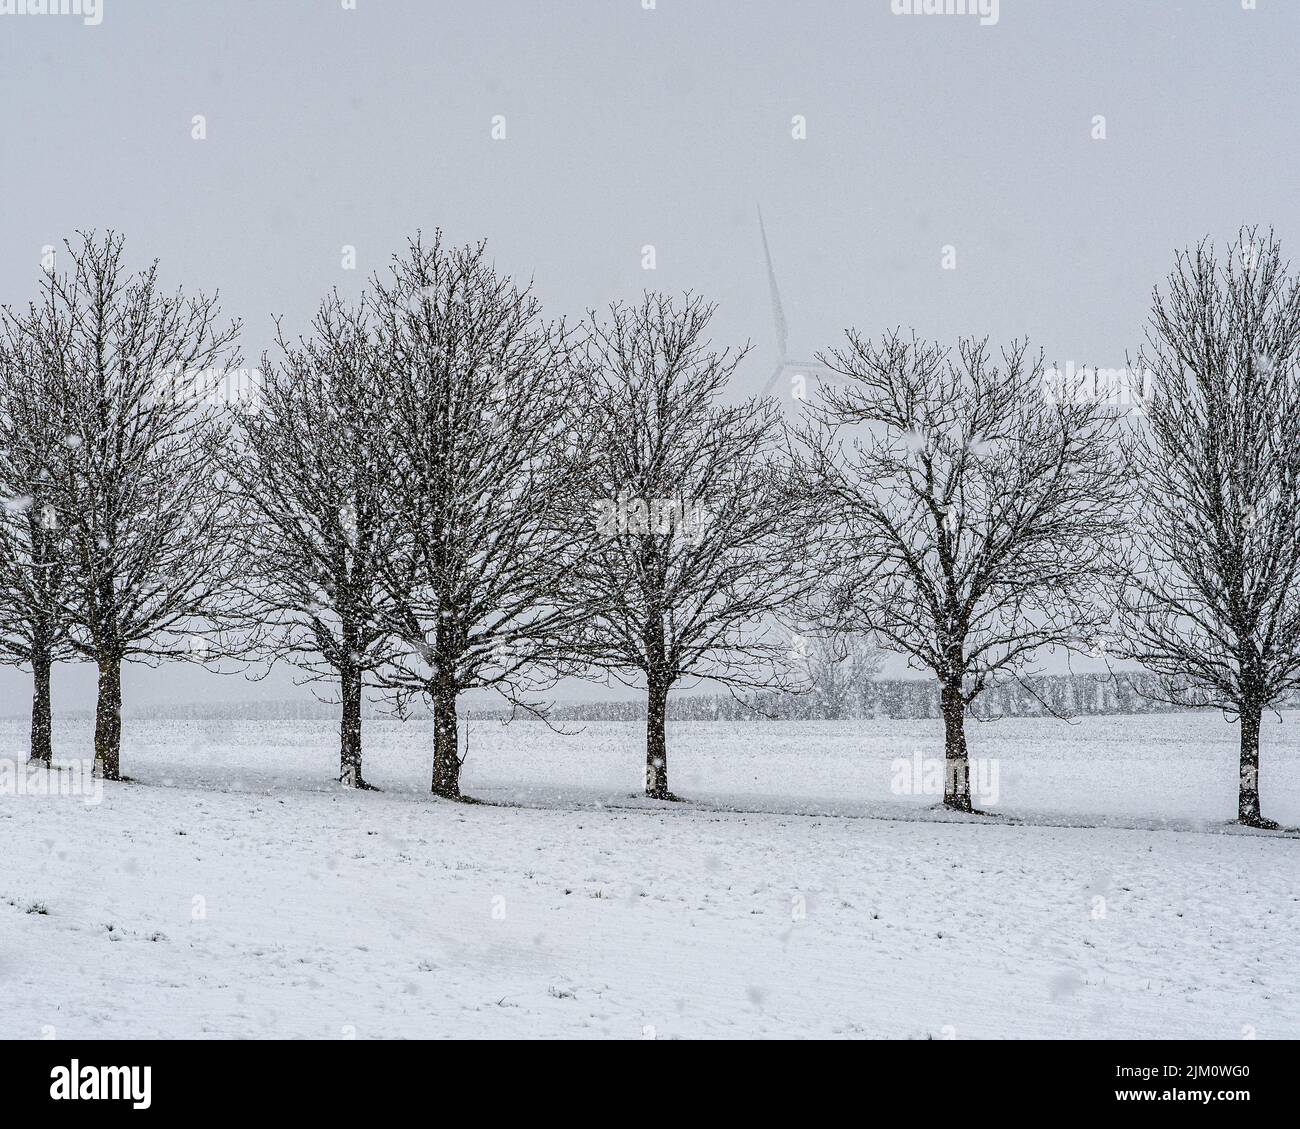 Nevicate su alberi nudi in un campo agricolo. Sullo sfondo, nella nebbia, una turbina eolica. Assens, Isola di Fyn, Danimarca, Europa Foto Stock